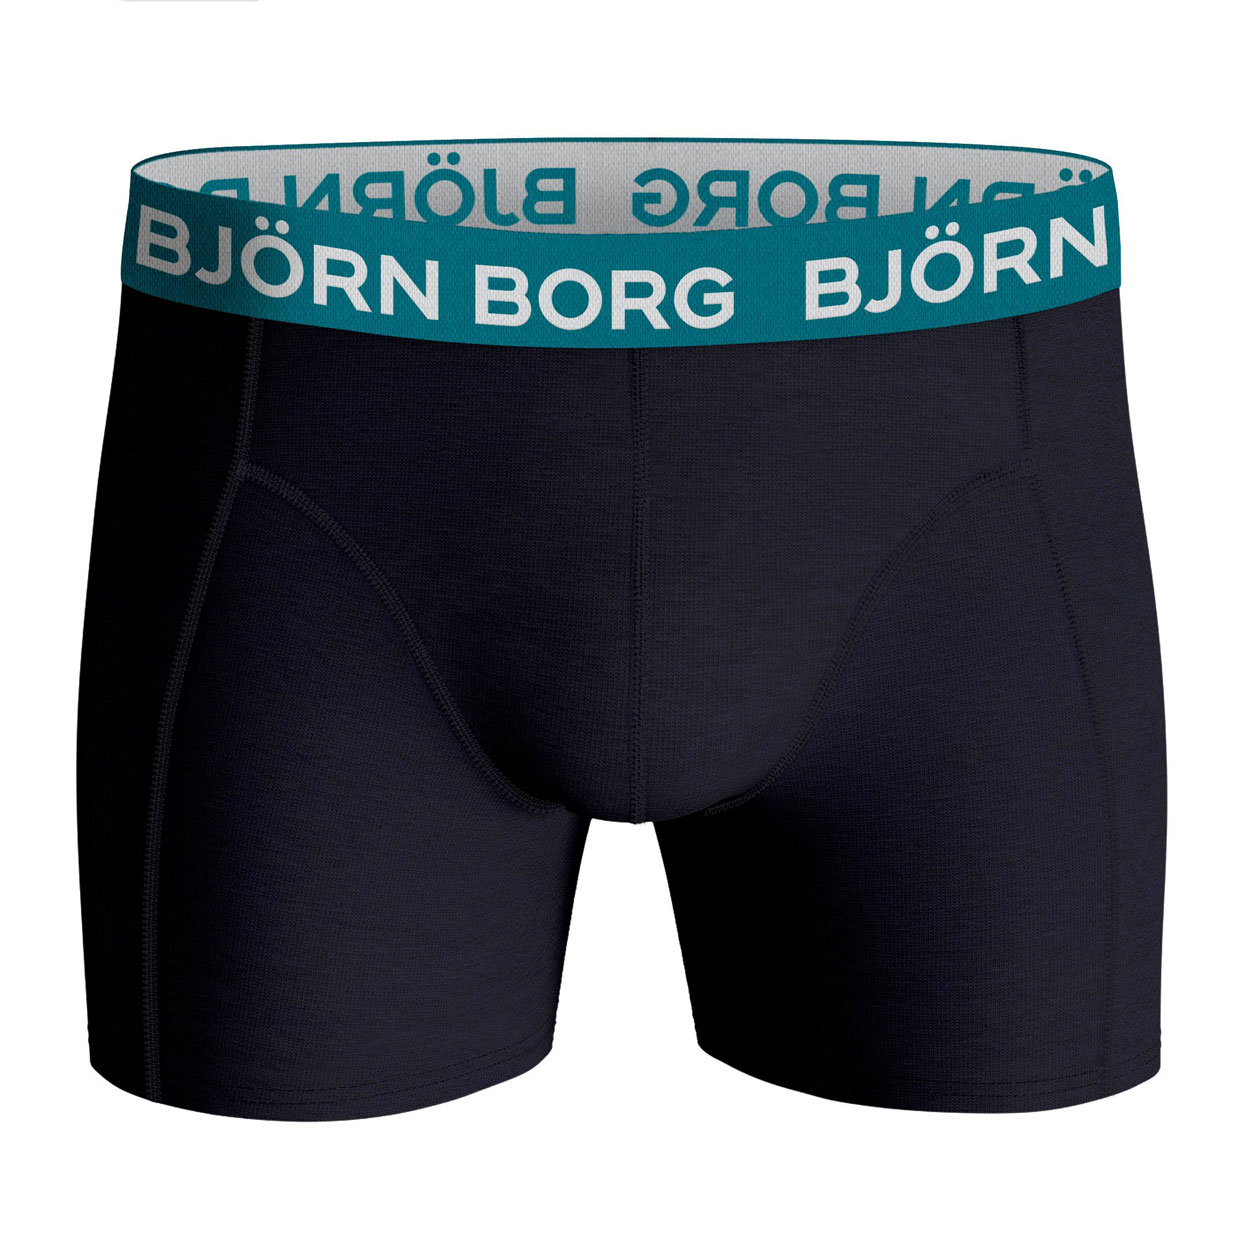 Bjorn-Borg-10001719-mp004-detail